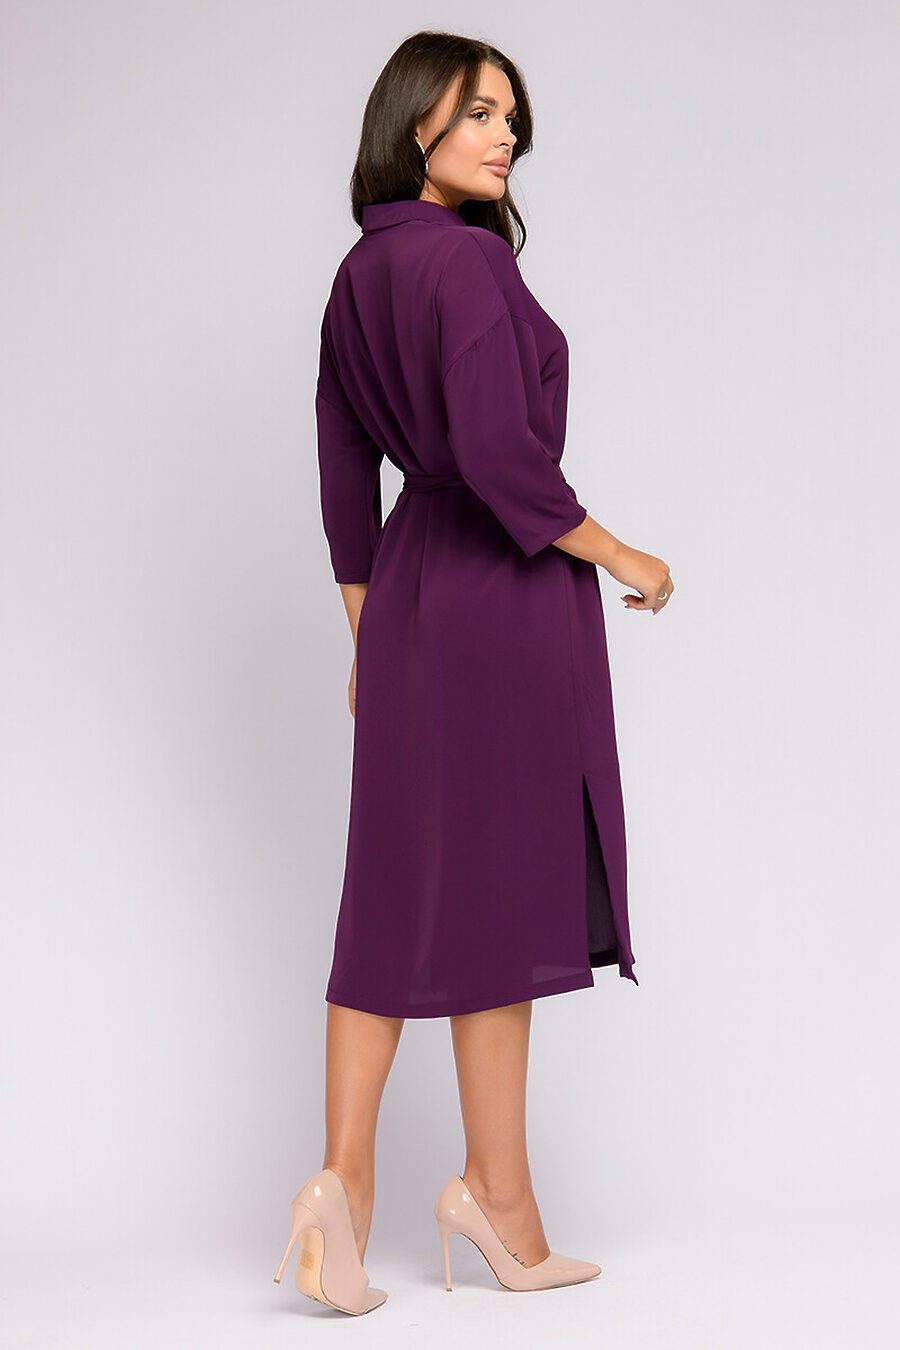 Платье для женщин 1001 DRESS 807709 купить оптом от производителя. Совместная покупка женской одежды в OptMoyo